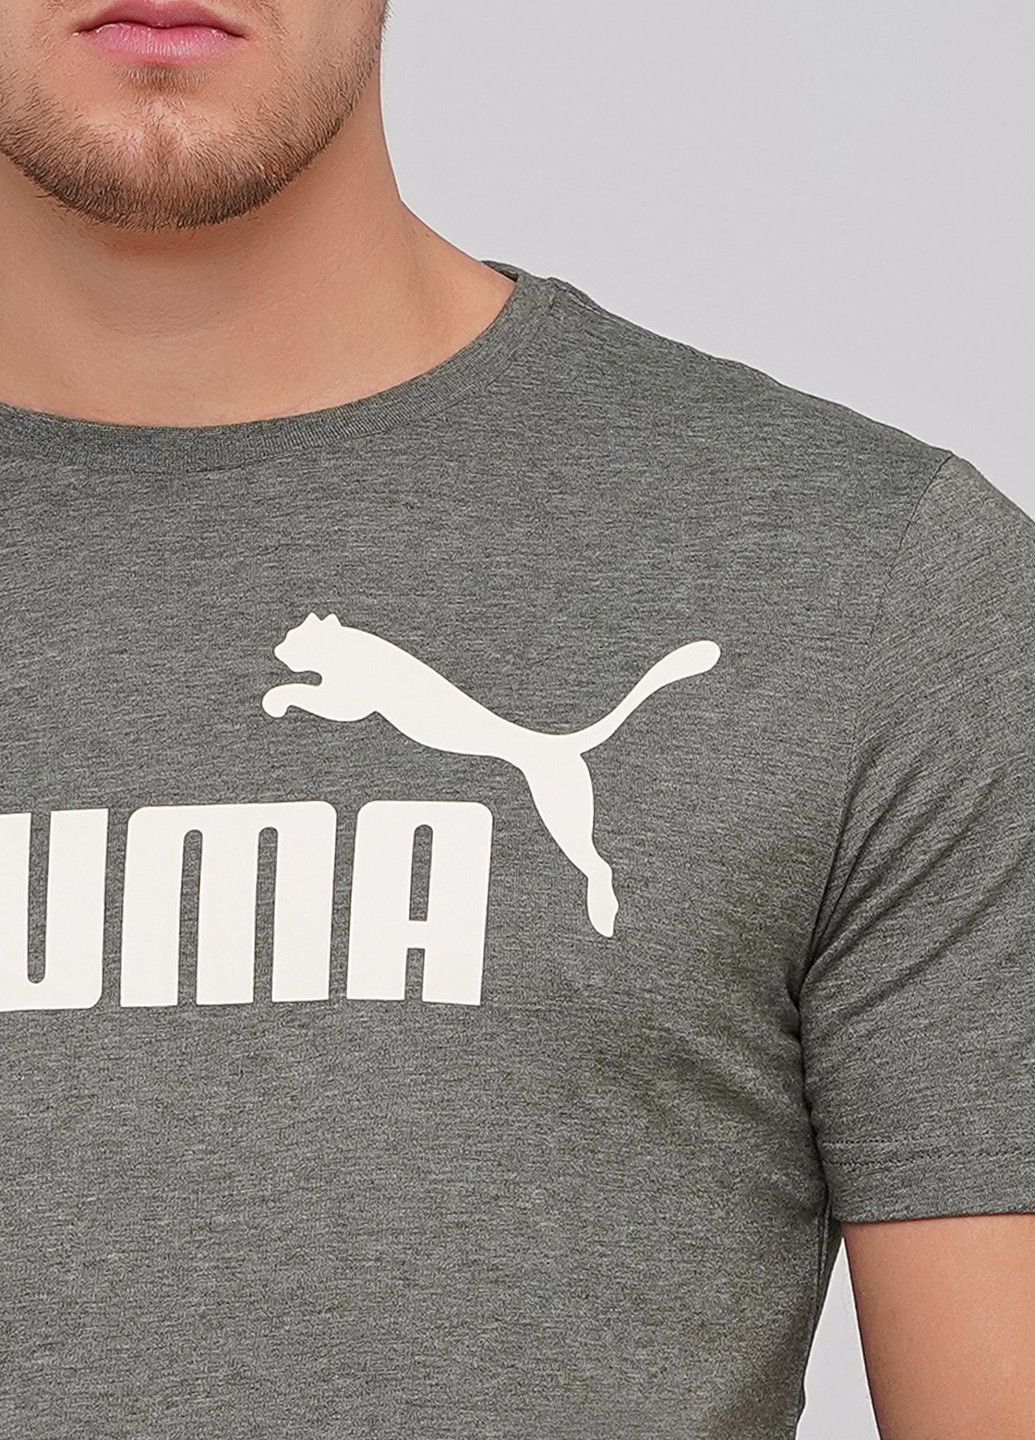 Сіра футболка Puma